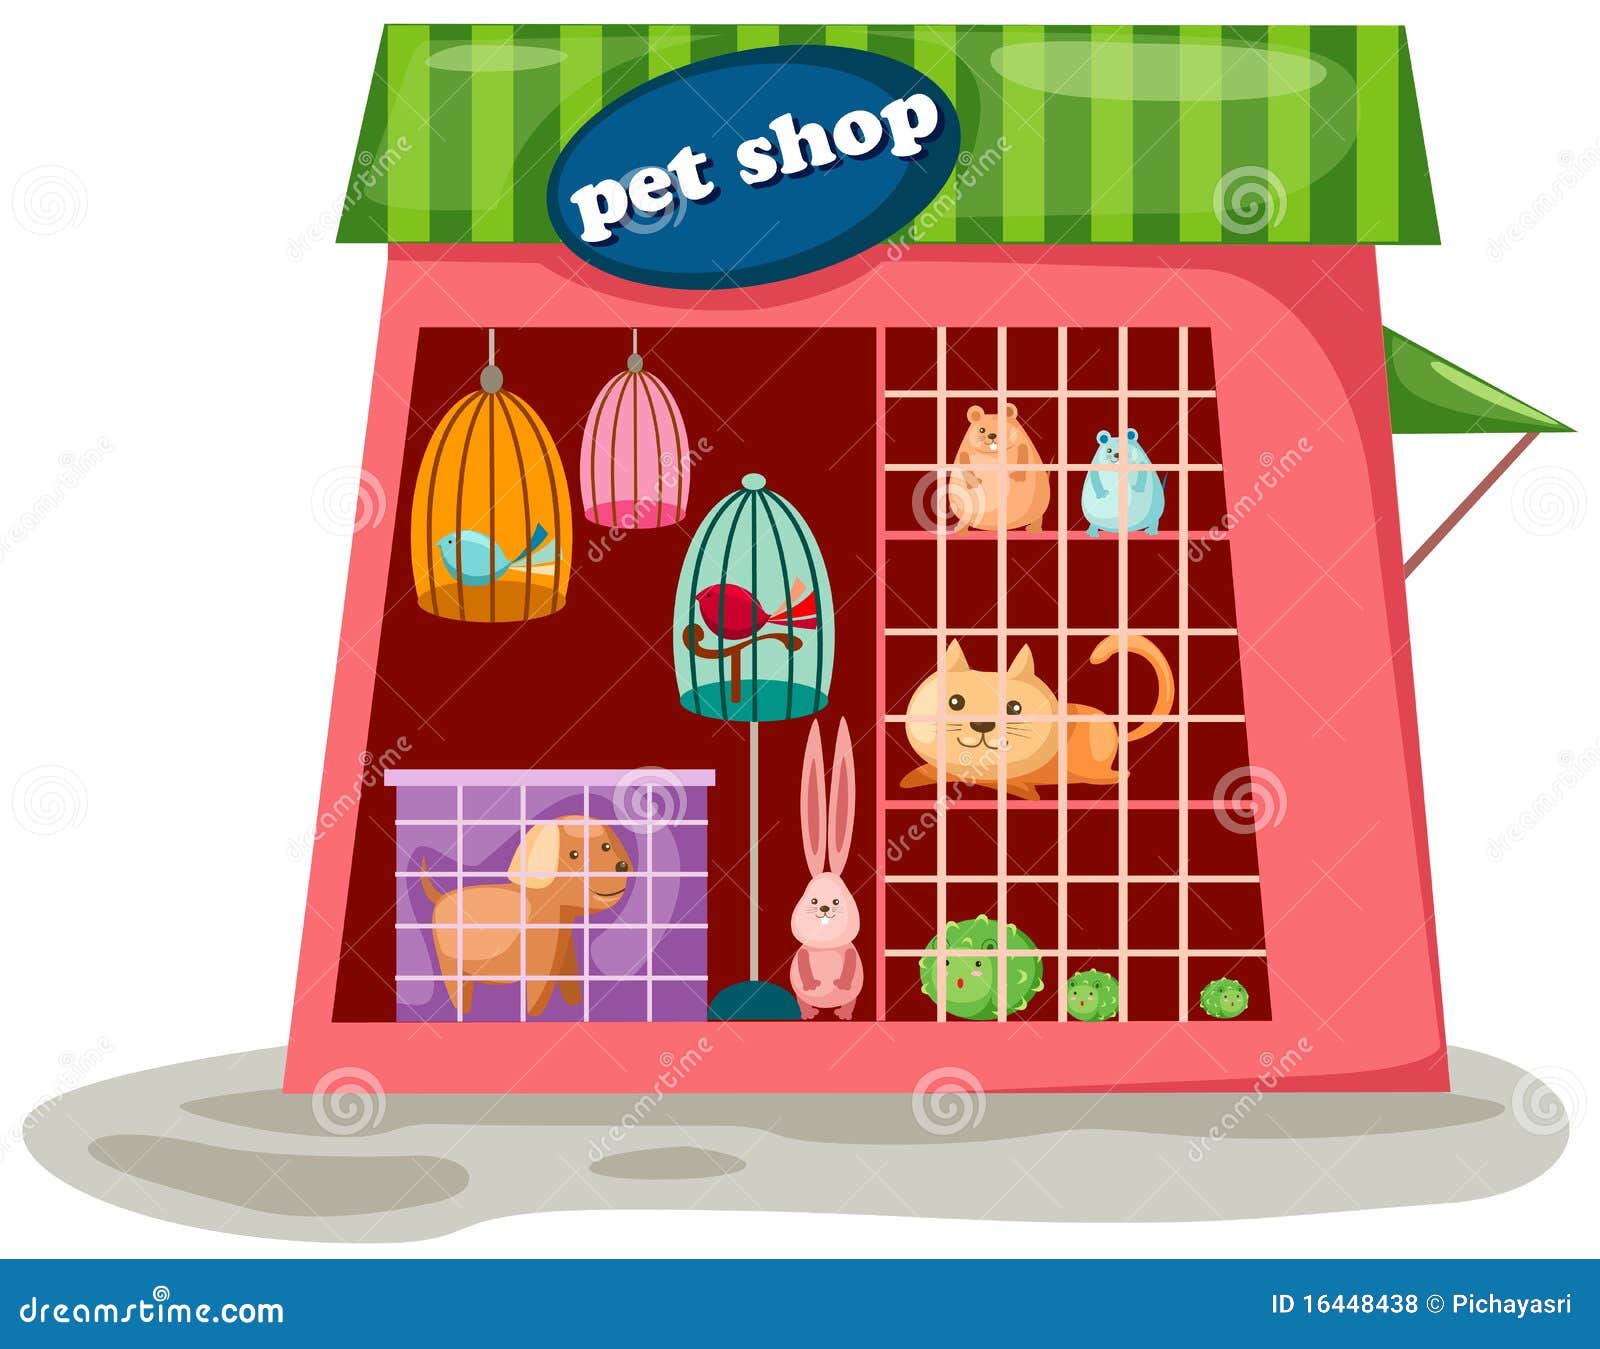 pet shop clipart - photo #7